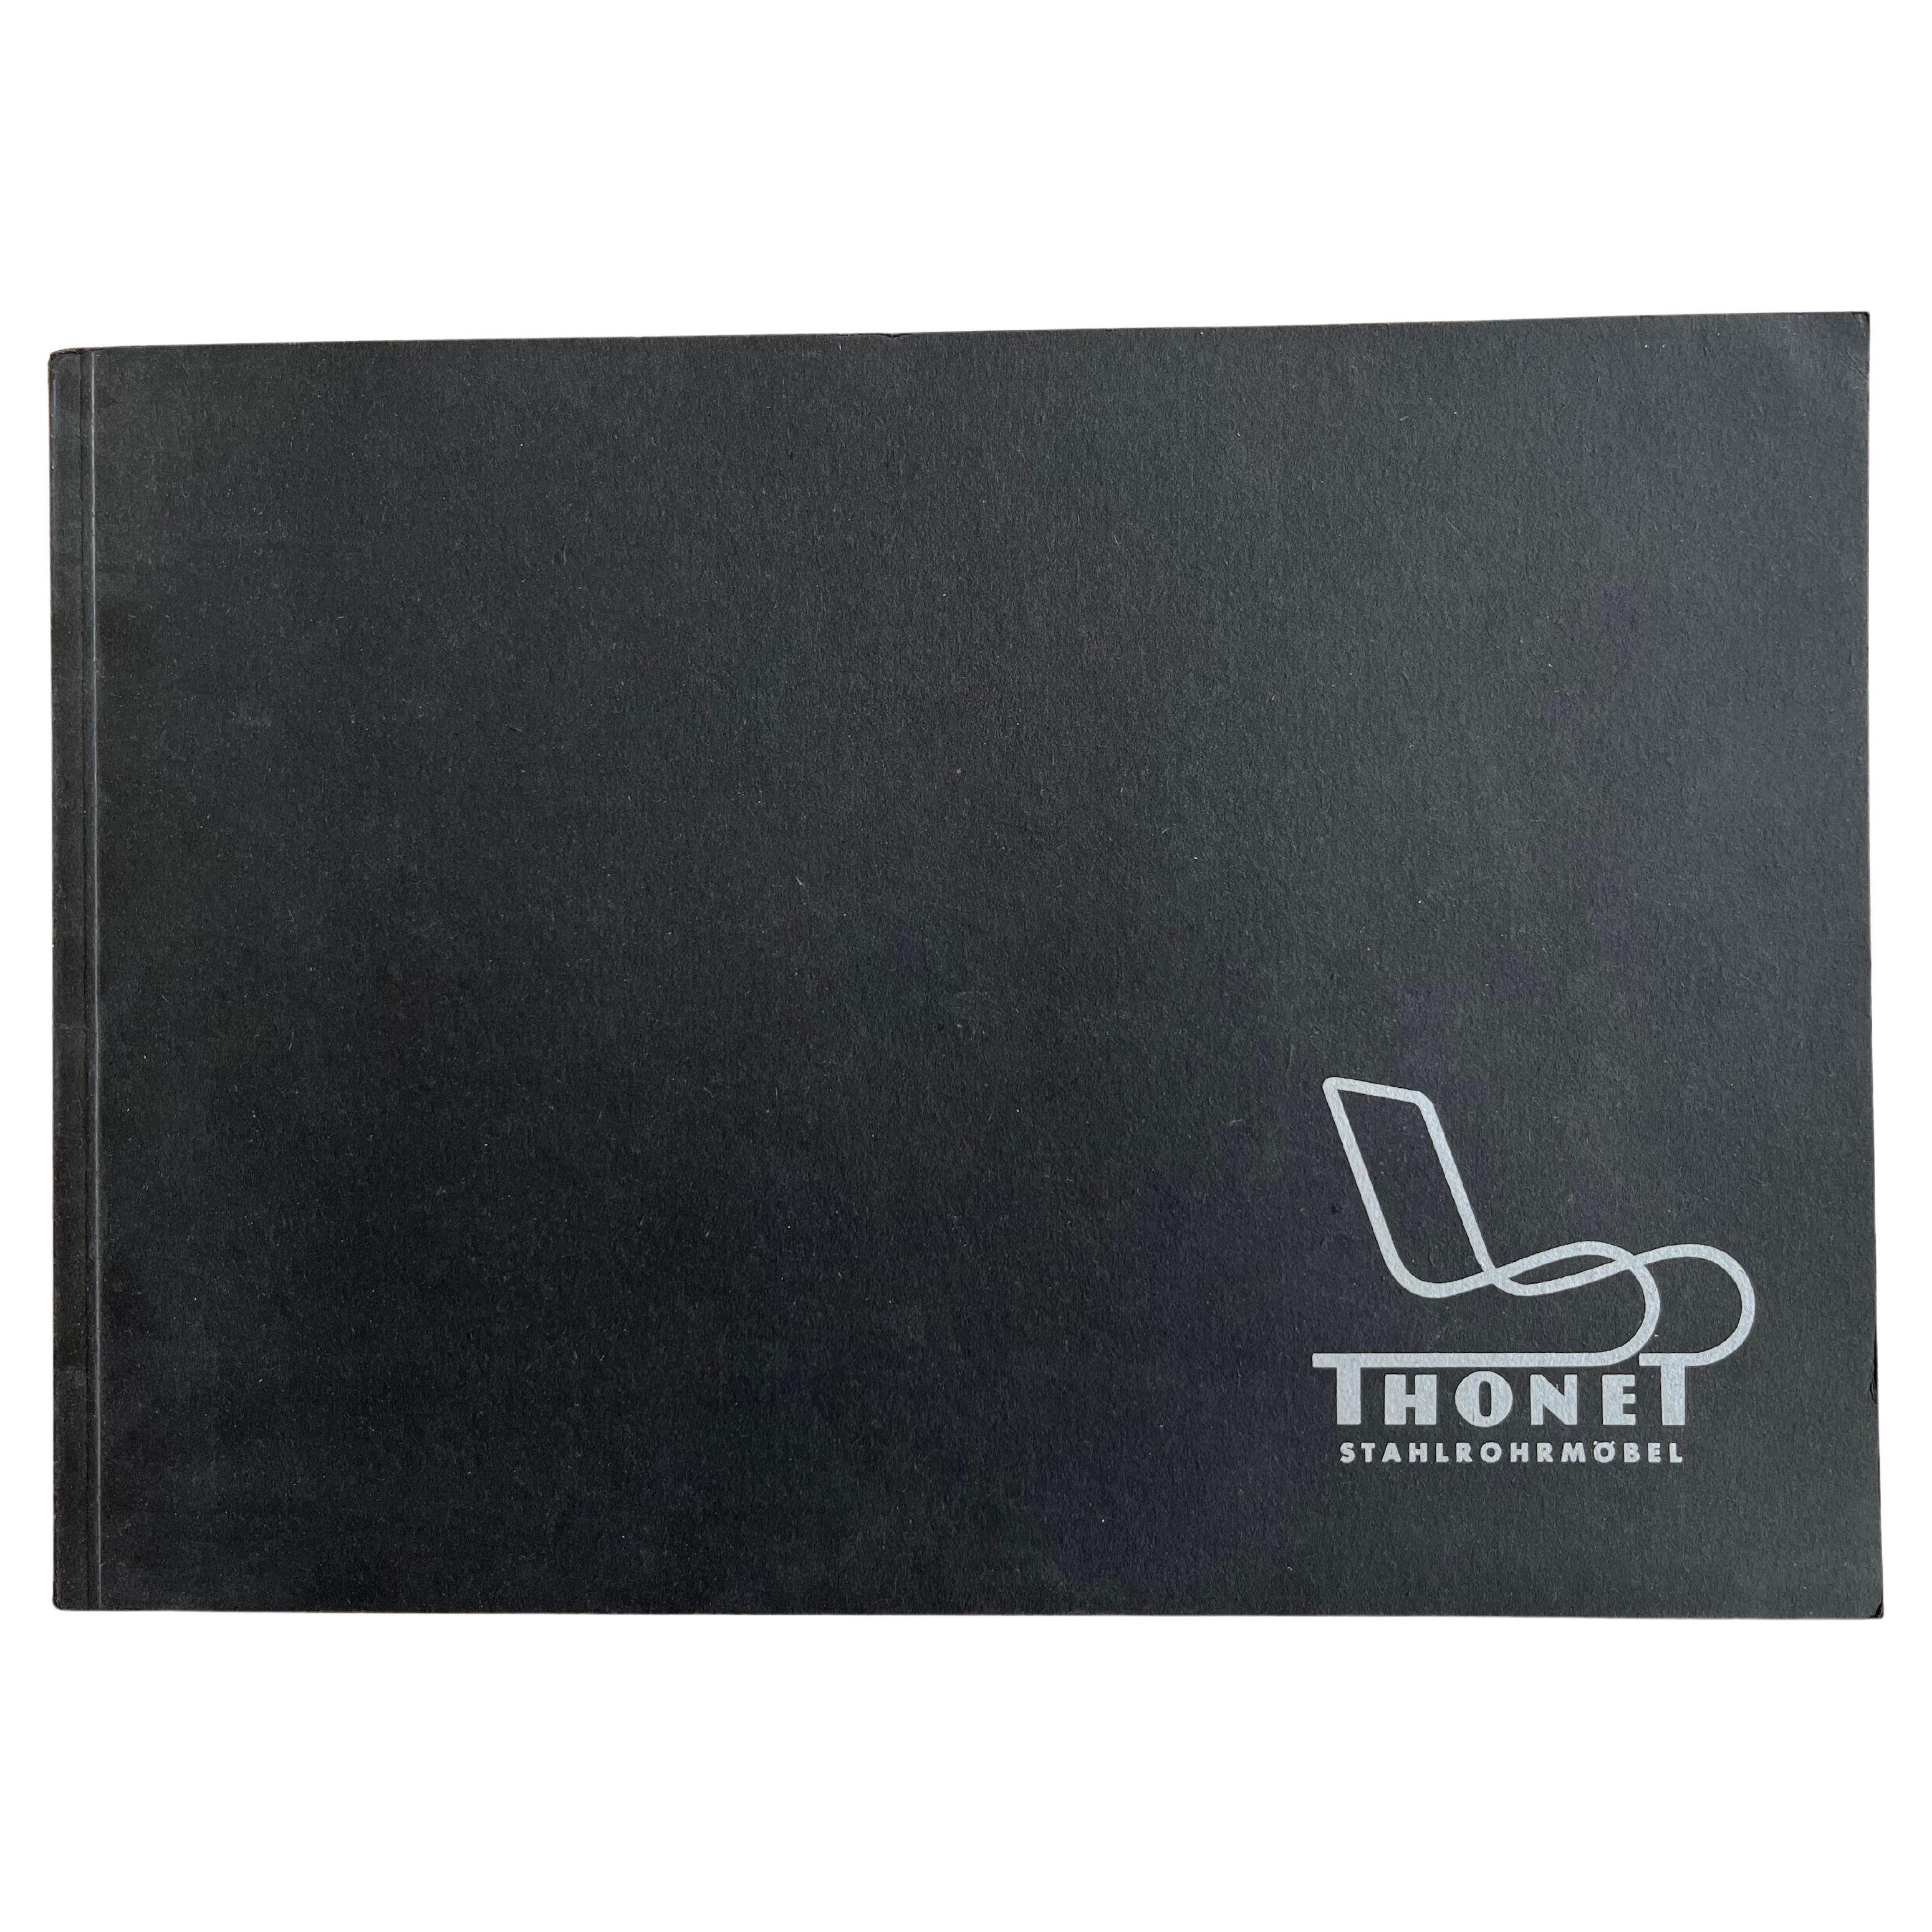 Original Thonet Stahlrohrmobel Furniture Catalogue, 1980s For Sale